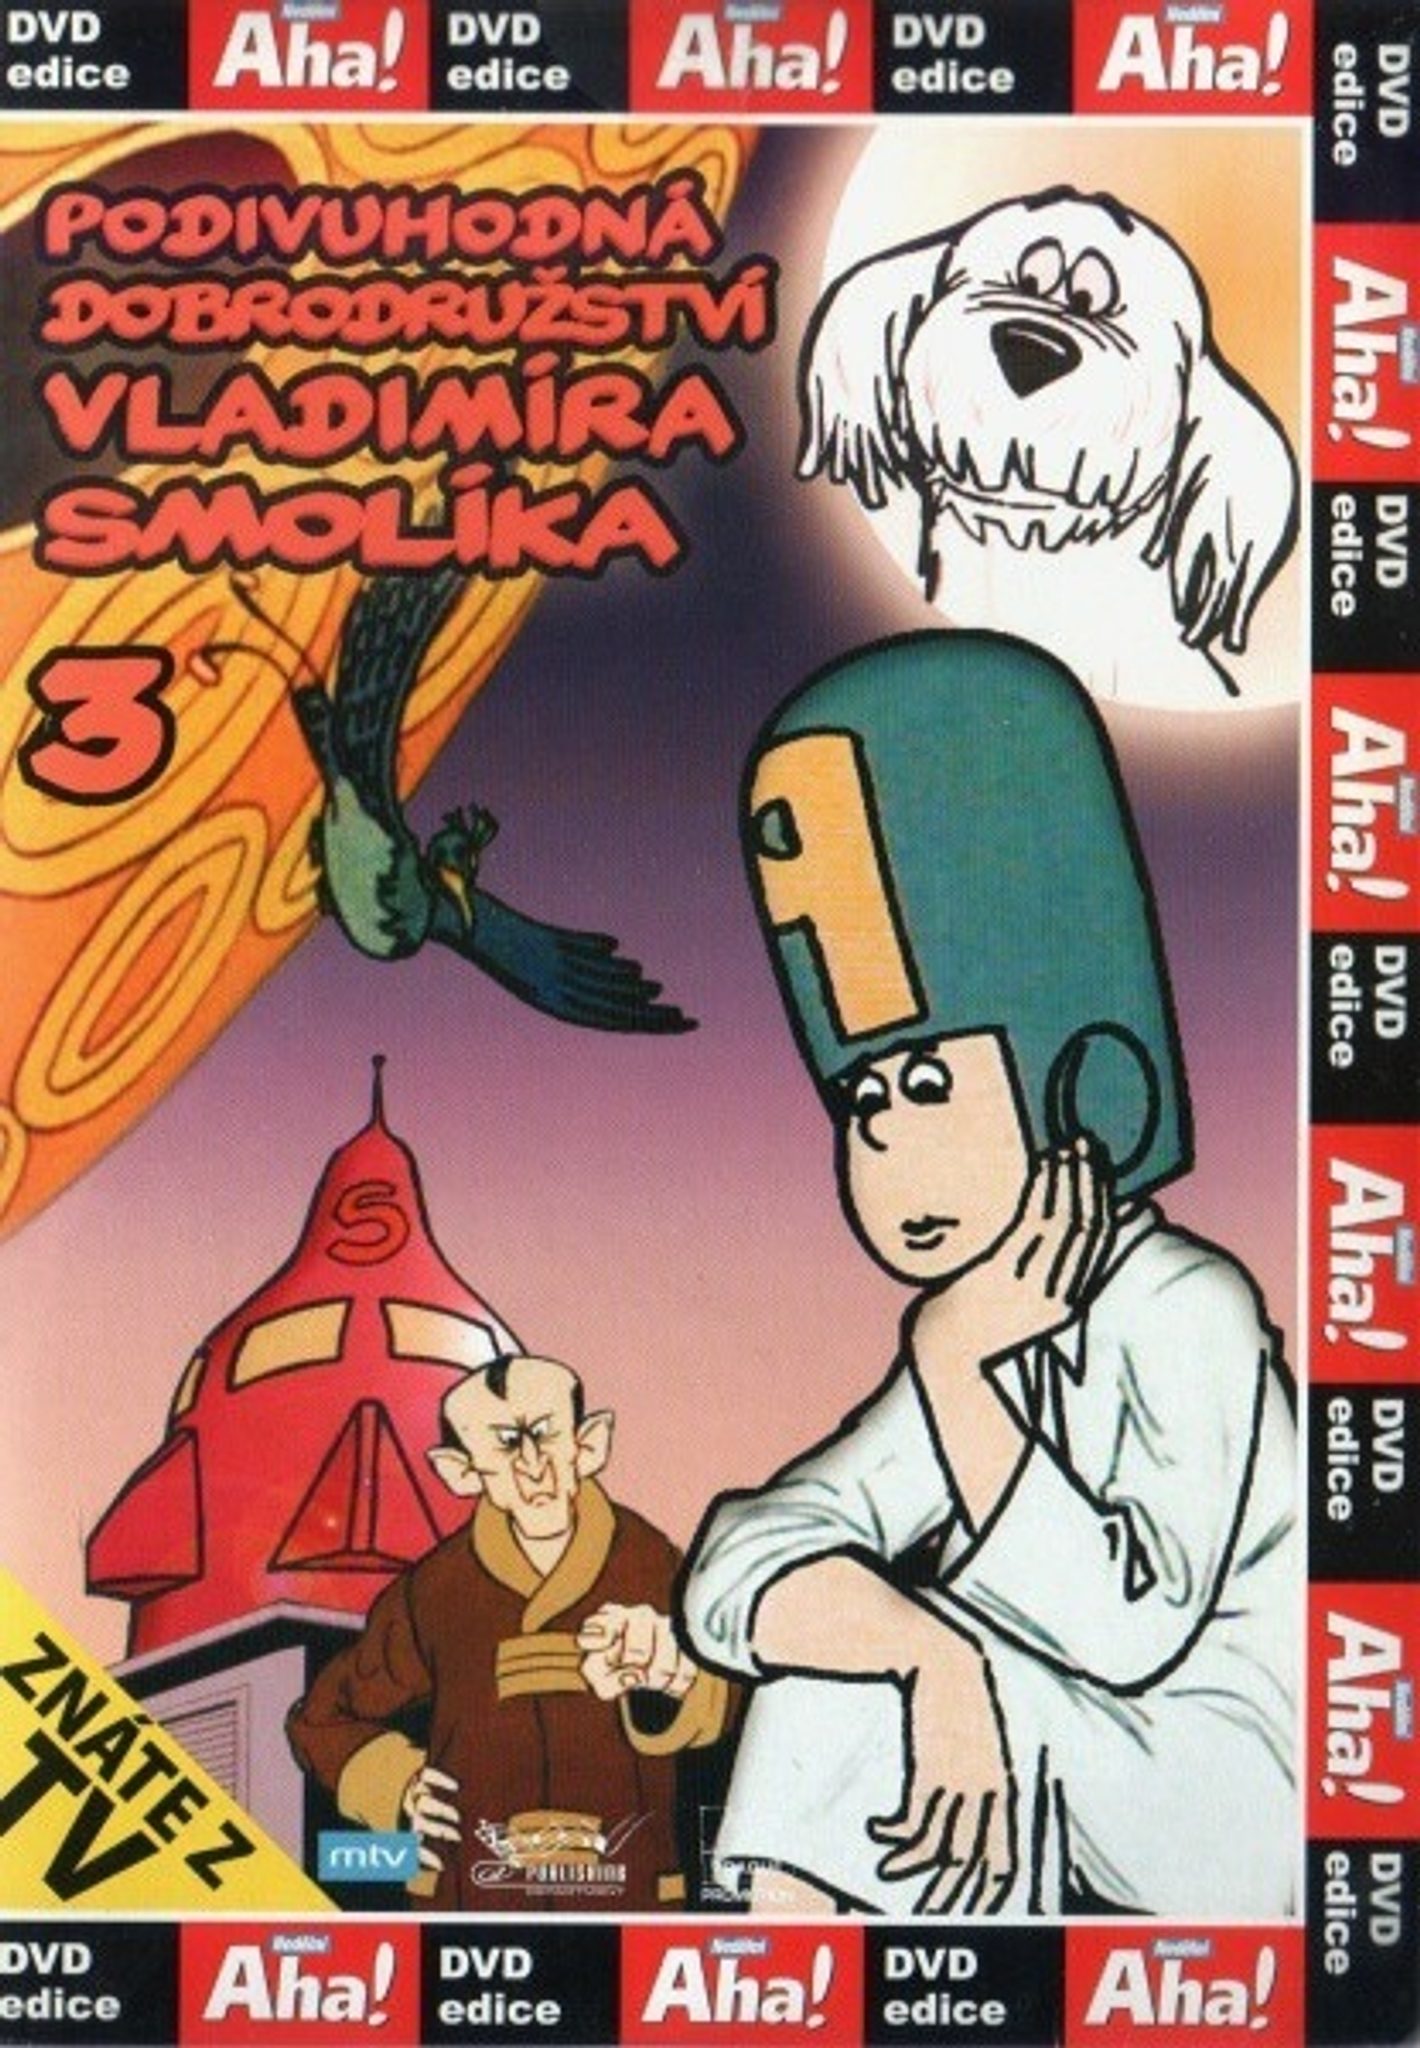 DVD Podivuhodn dobrodrustv Vladimra Smolka 3